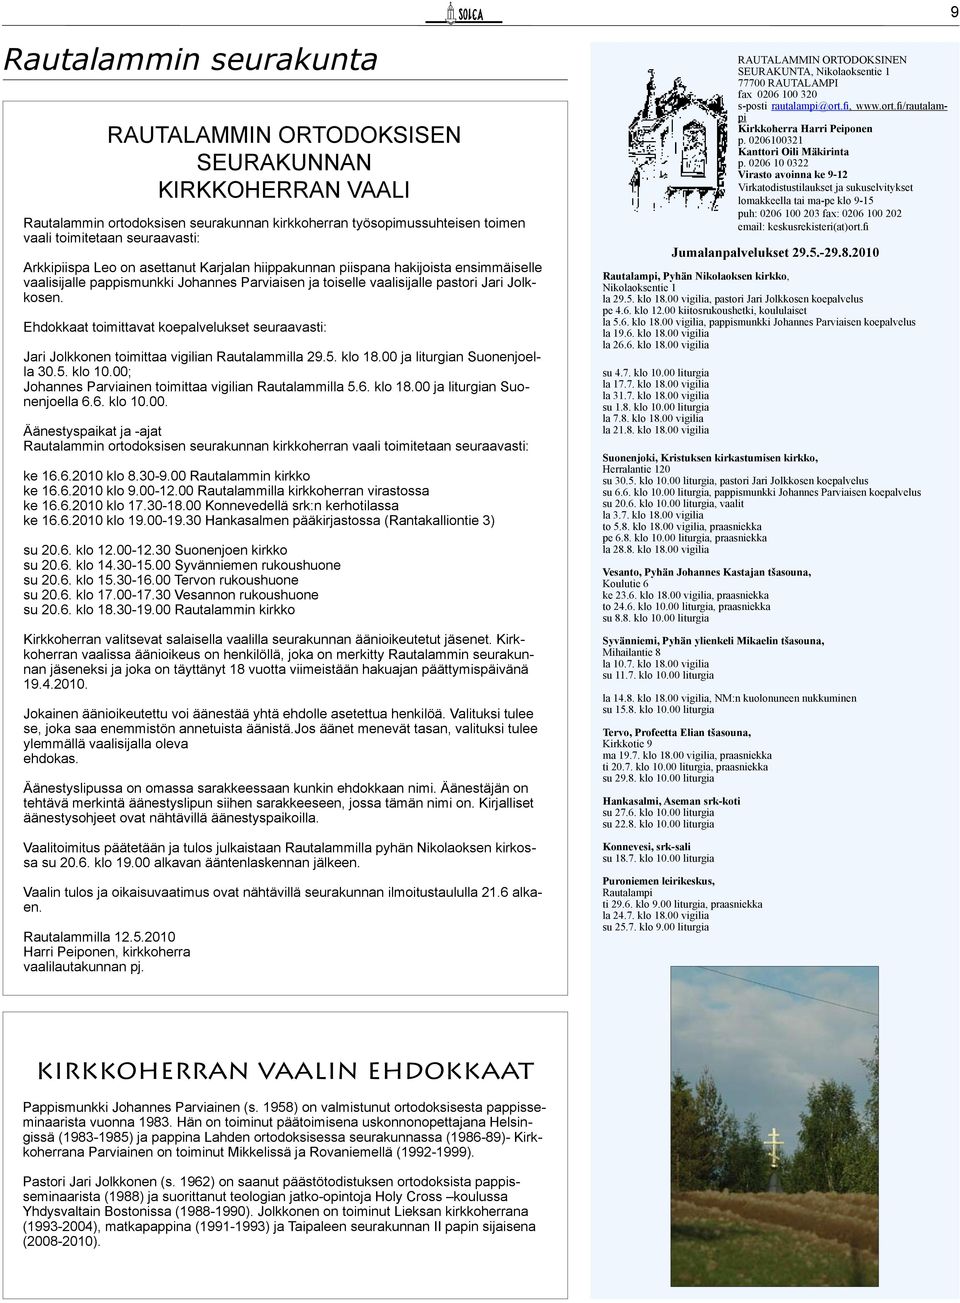 Ehdokkaat toimittavat koepalvelukset seuraavasti: Jari Jolkkonen toimittaa vigilian Rautalammilla 29.5. klo 18.00 ja liturgian Suonenjoella 30.5. klo 10.